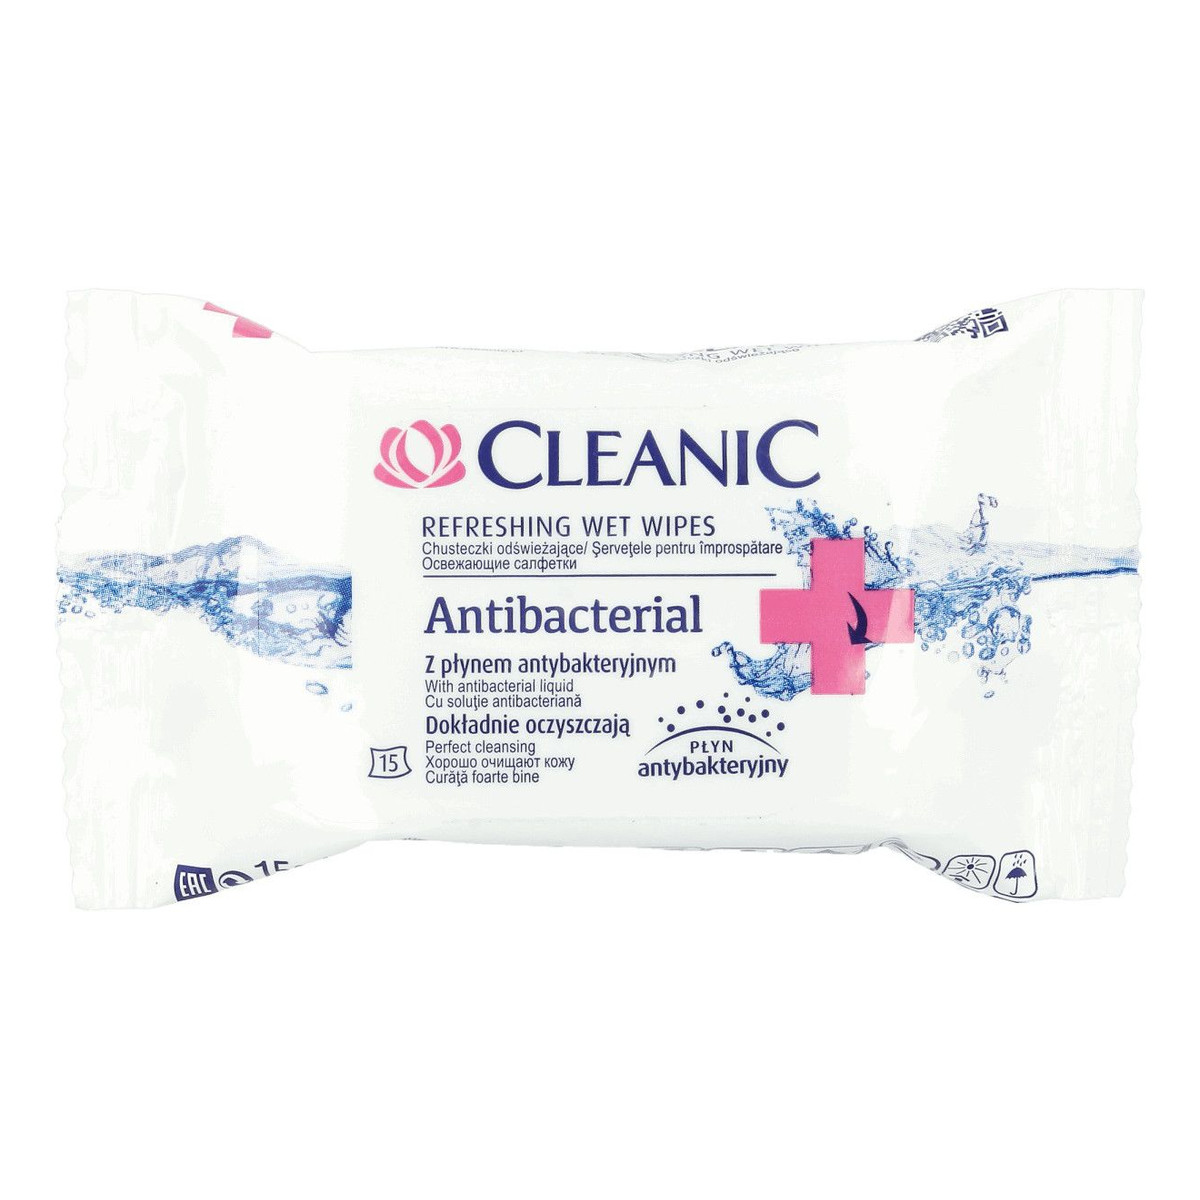 Cleanic Refreshing Wet Wipes Chusteczki Odświeżające Antibacterial 15 szt. z Płynem Antybakteryjnym